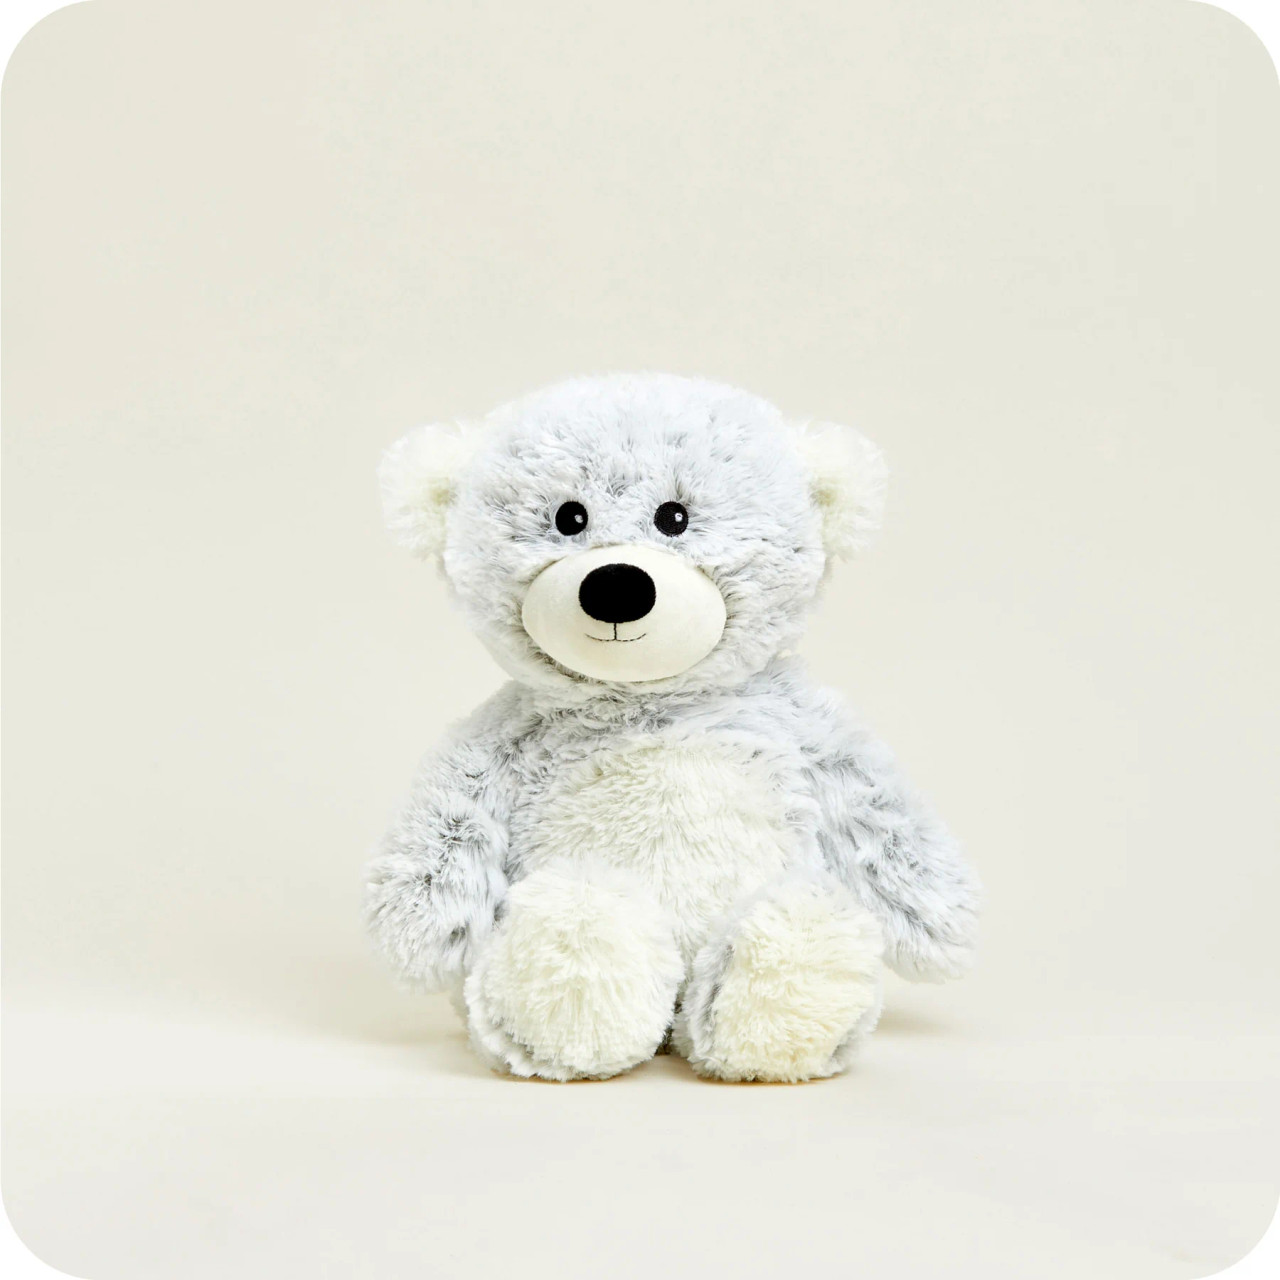 13 Snuggle Pal Bear in Soft & Cuddly Stuffed Animals & Teddy Bears